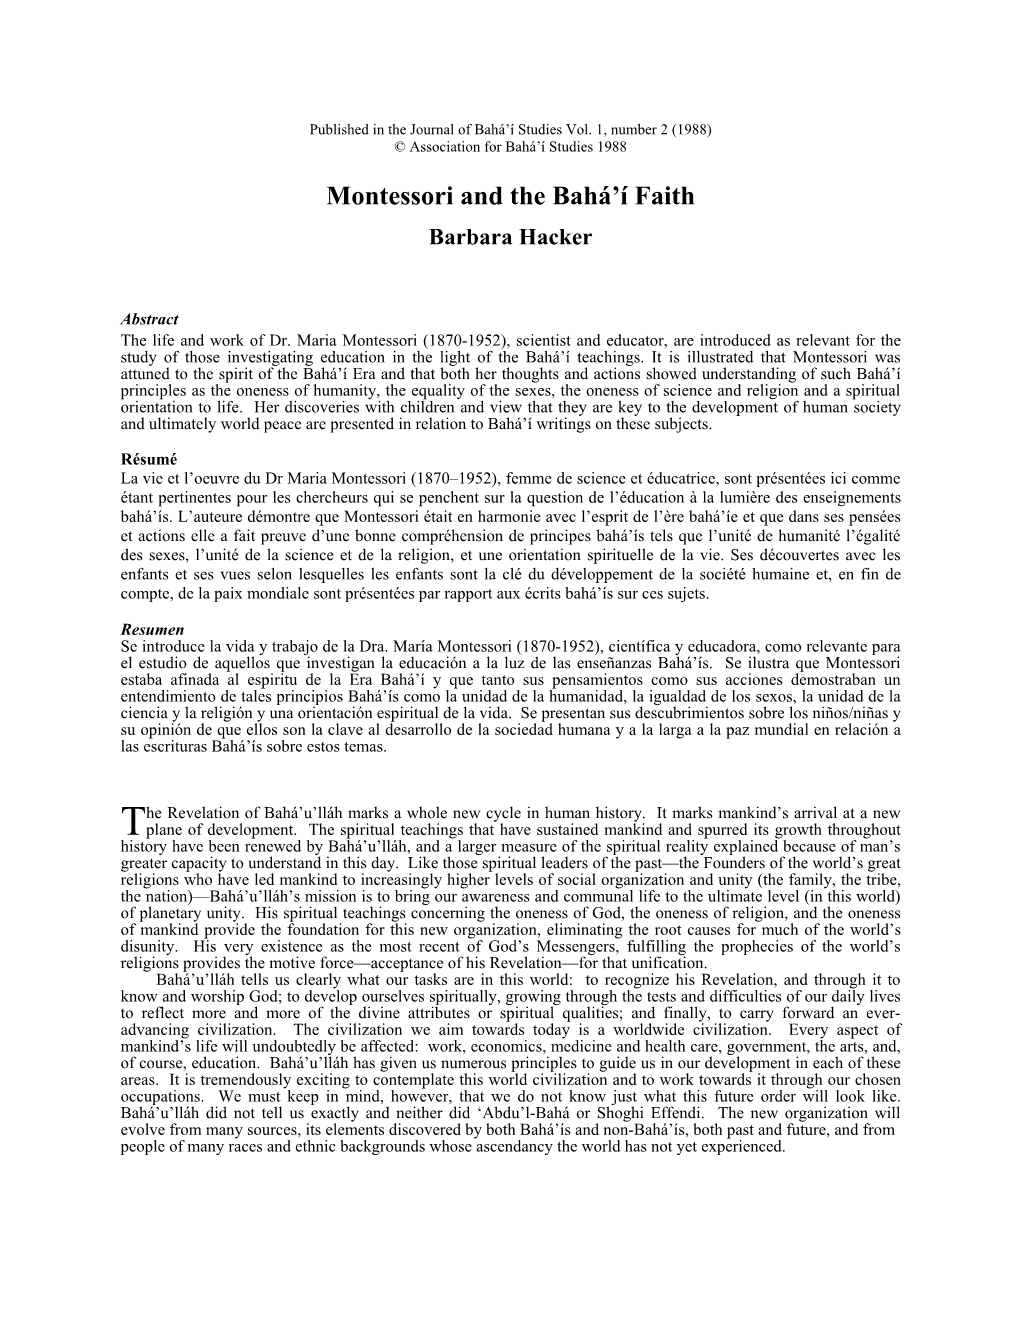 Montessori and the Bahá'í Faith